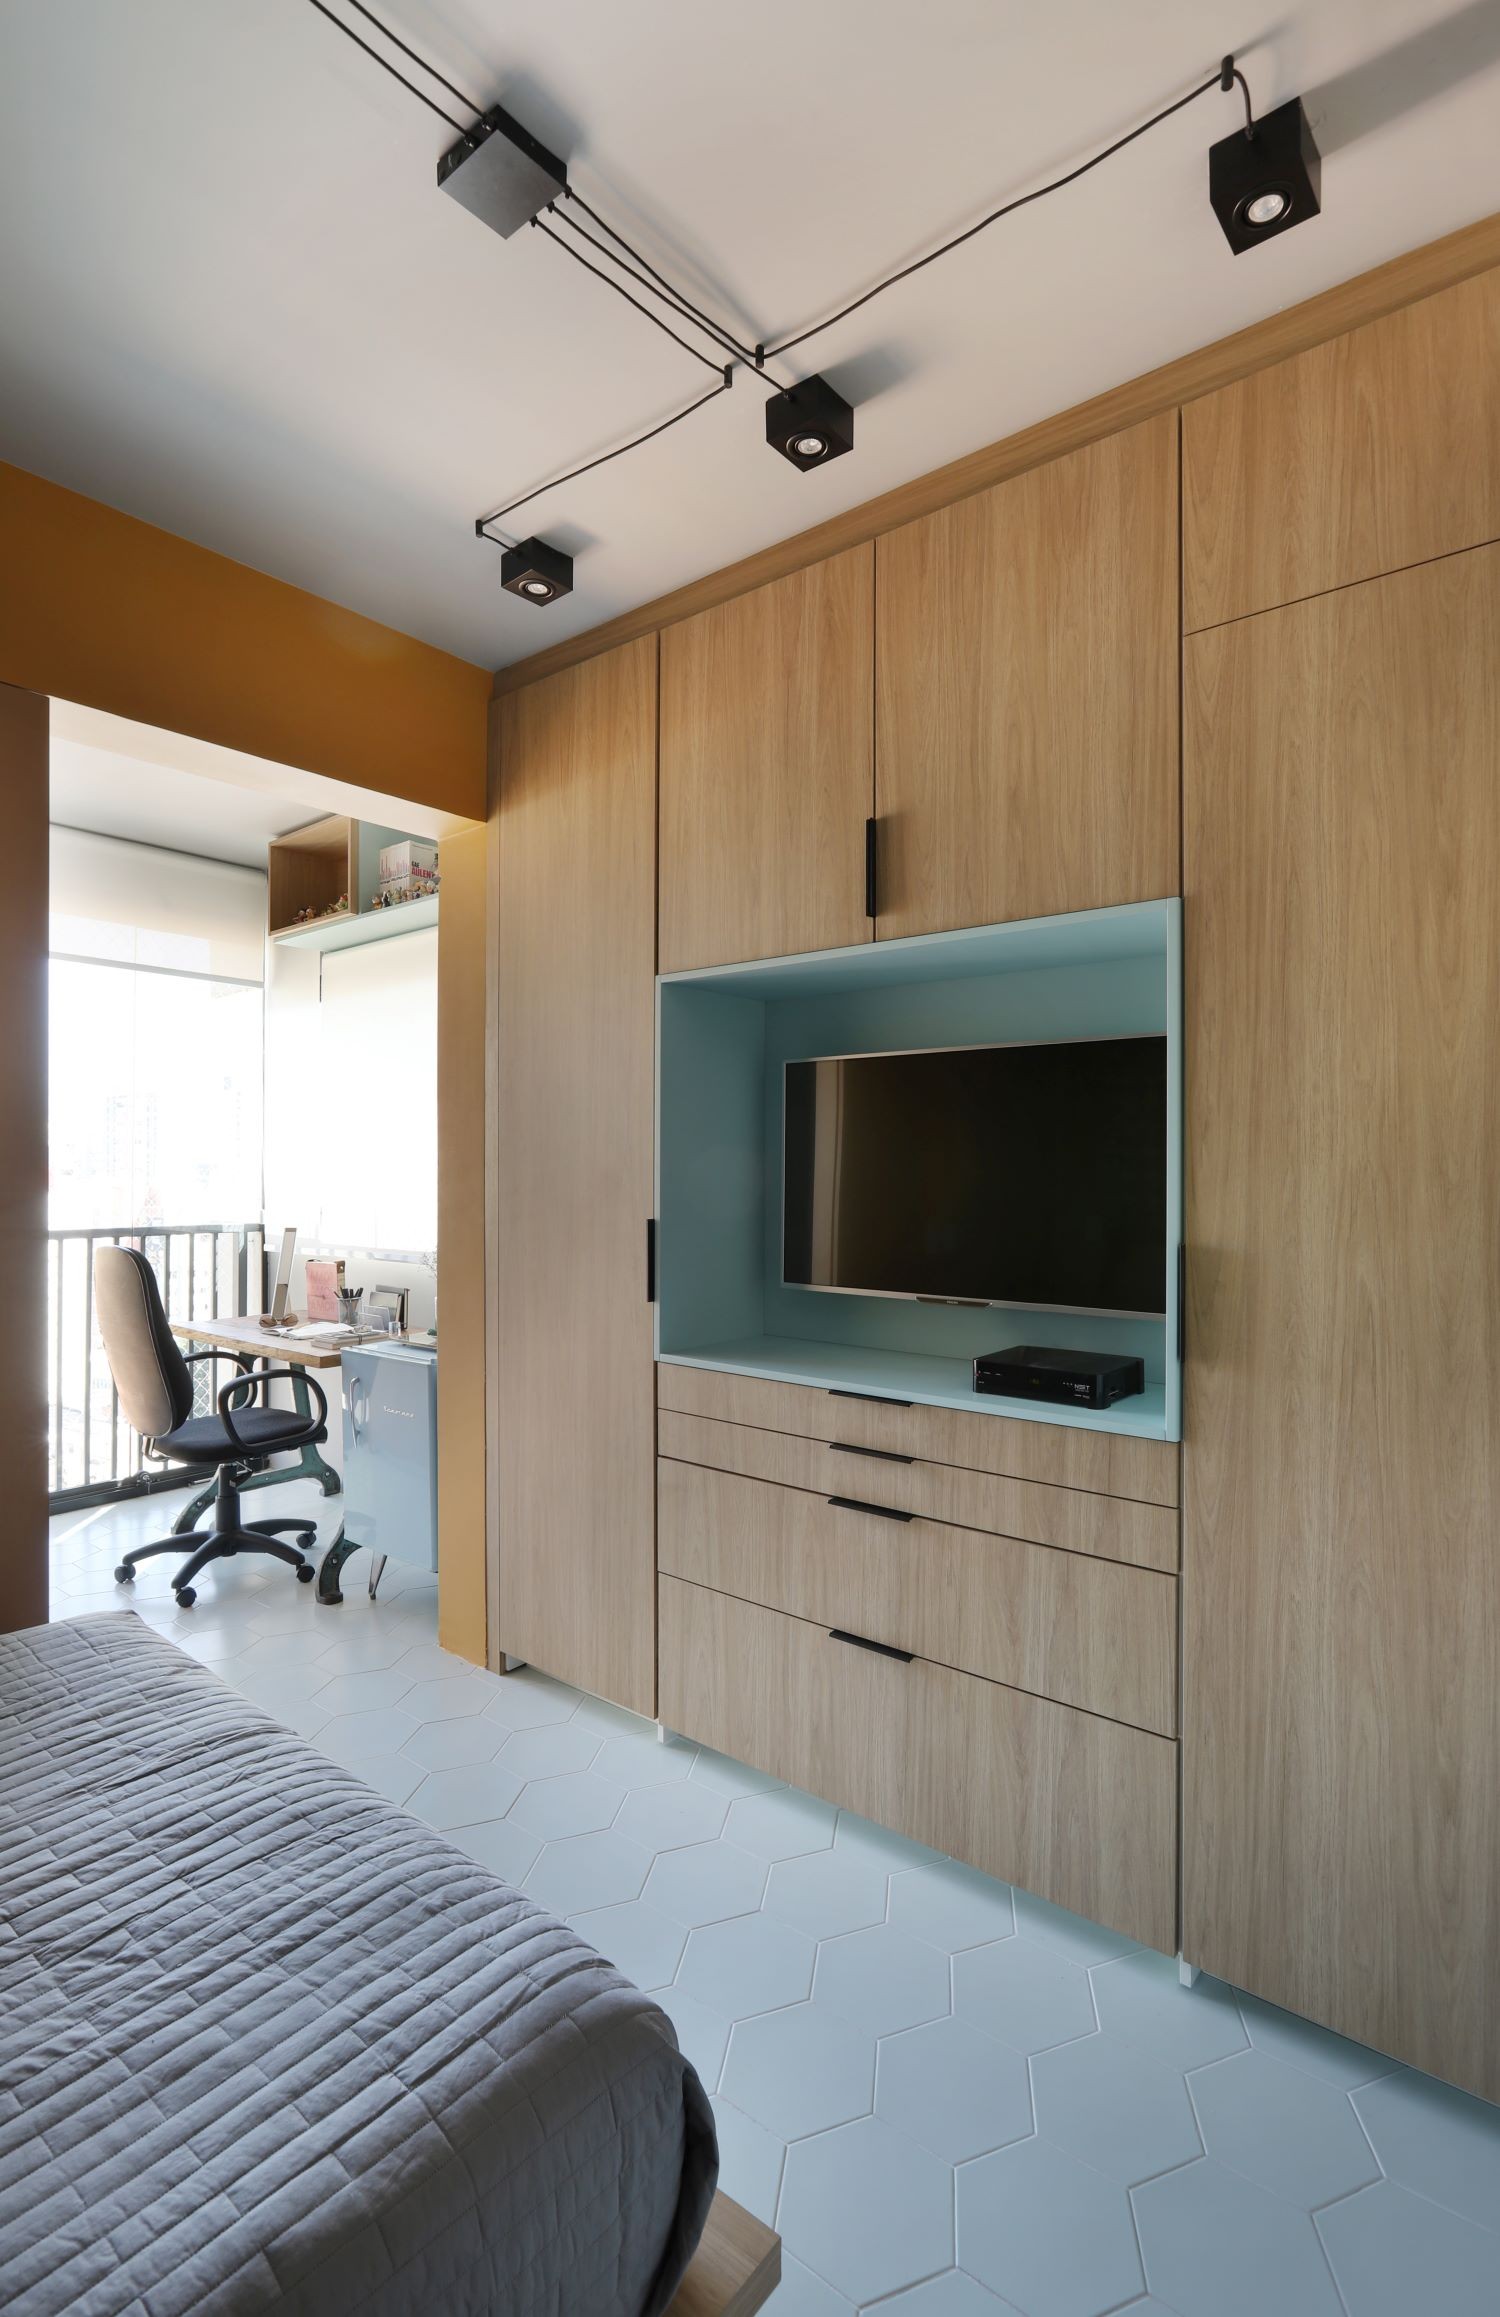 QUARTO/HOME OFFICE | O painel atrás da cama traz mais cores, que se misturam com o verde da parede (Foto: Divulgação / Mariana Orsi)